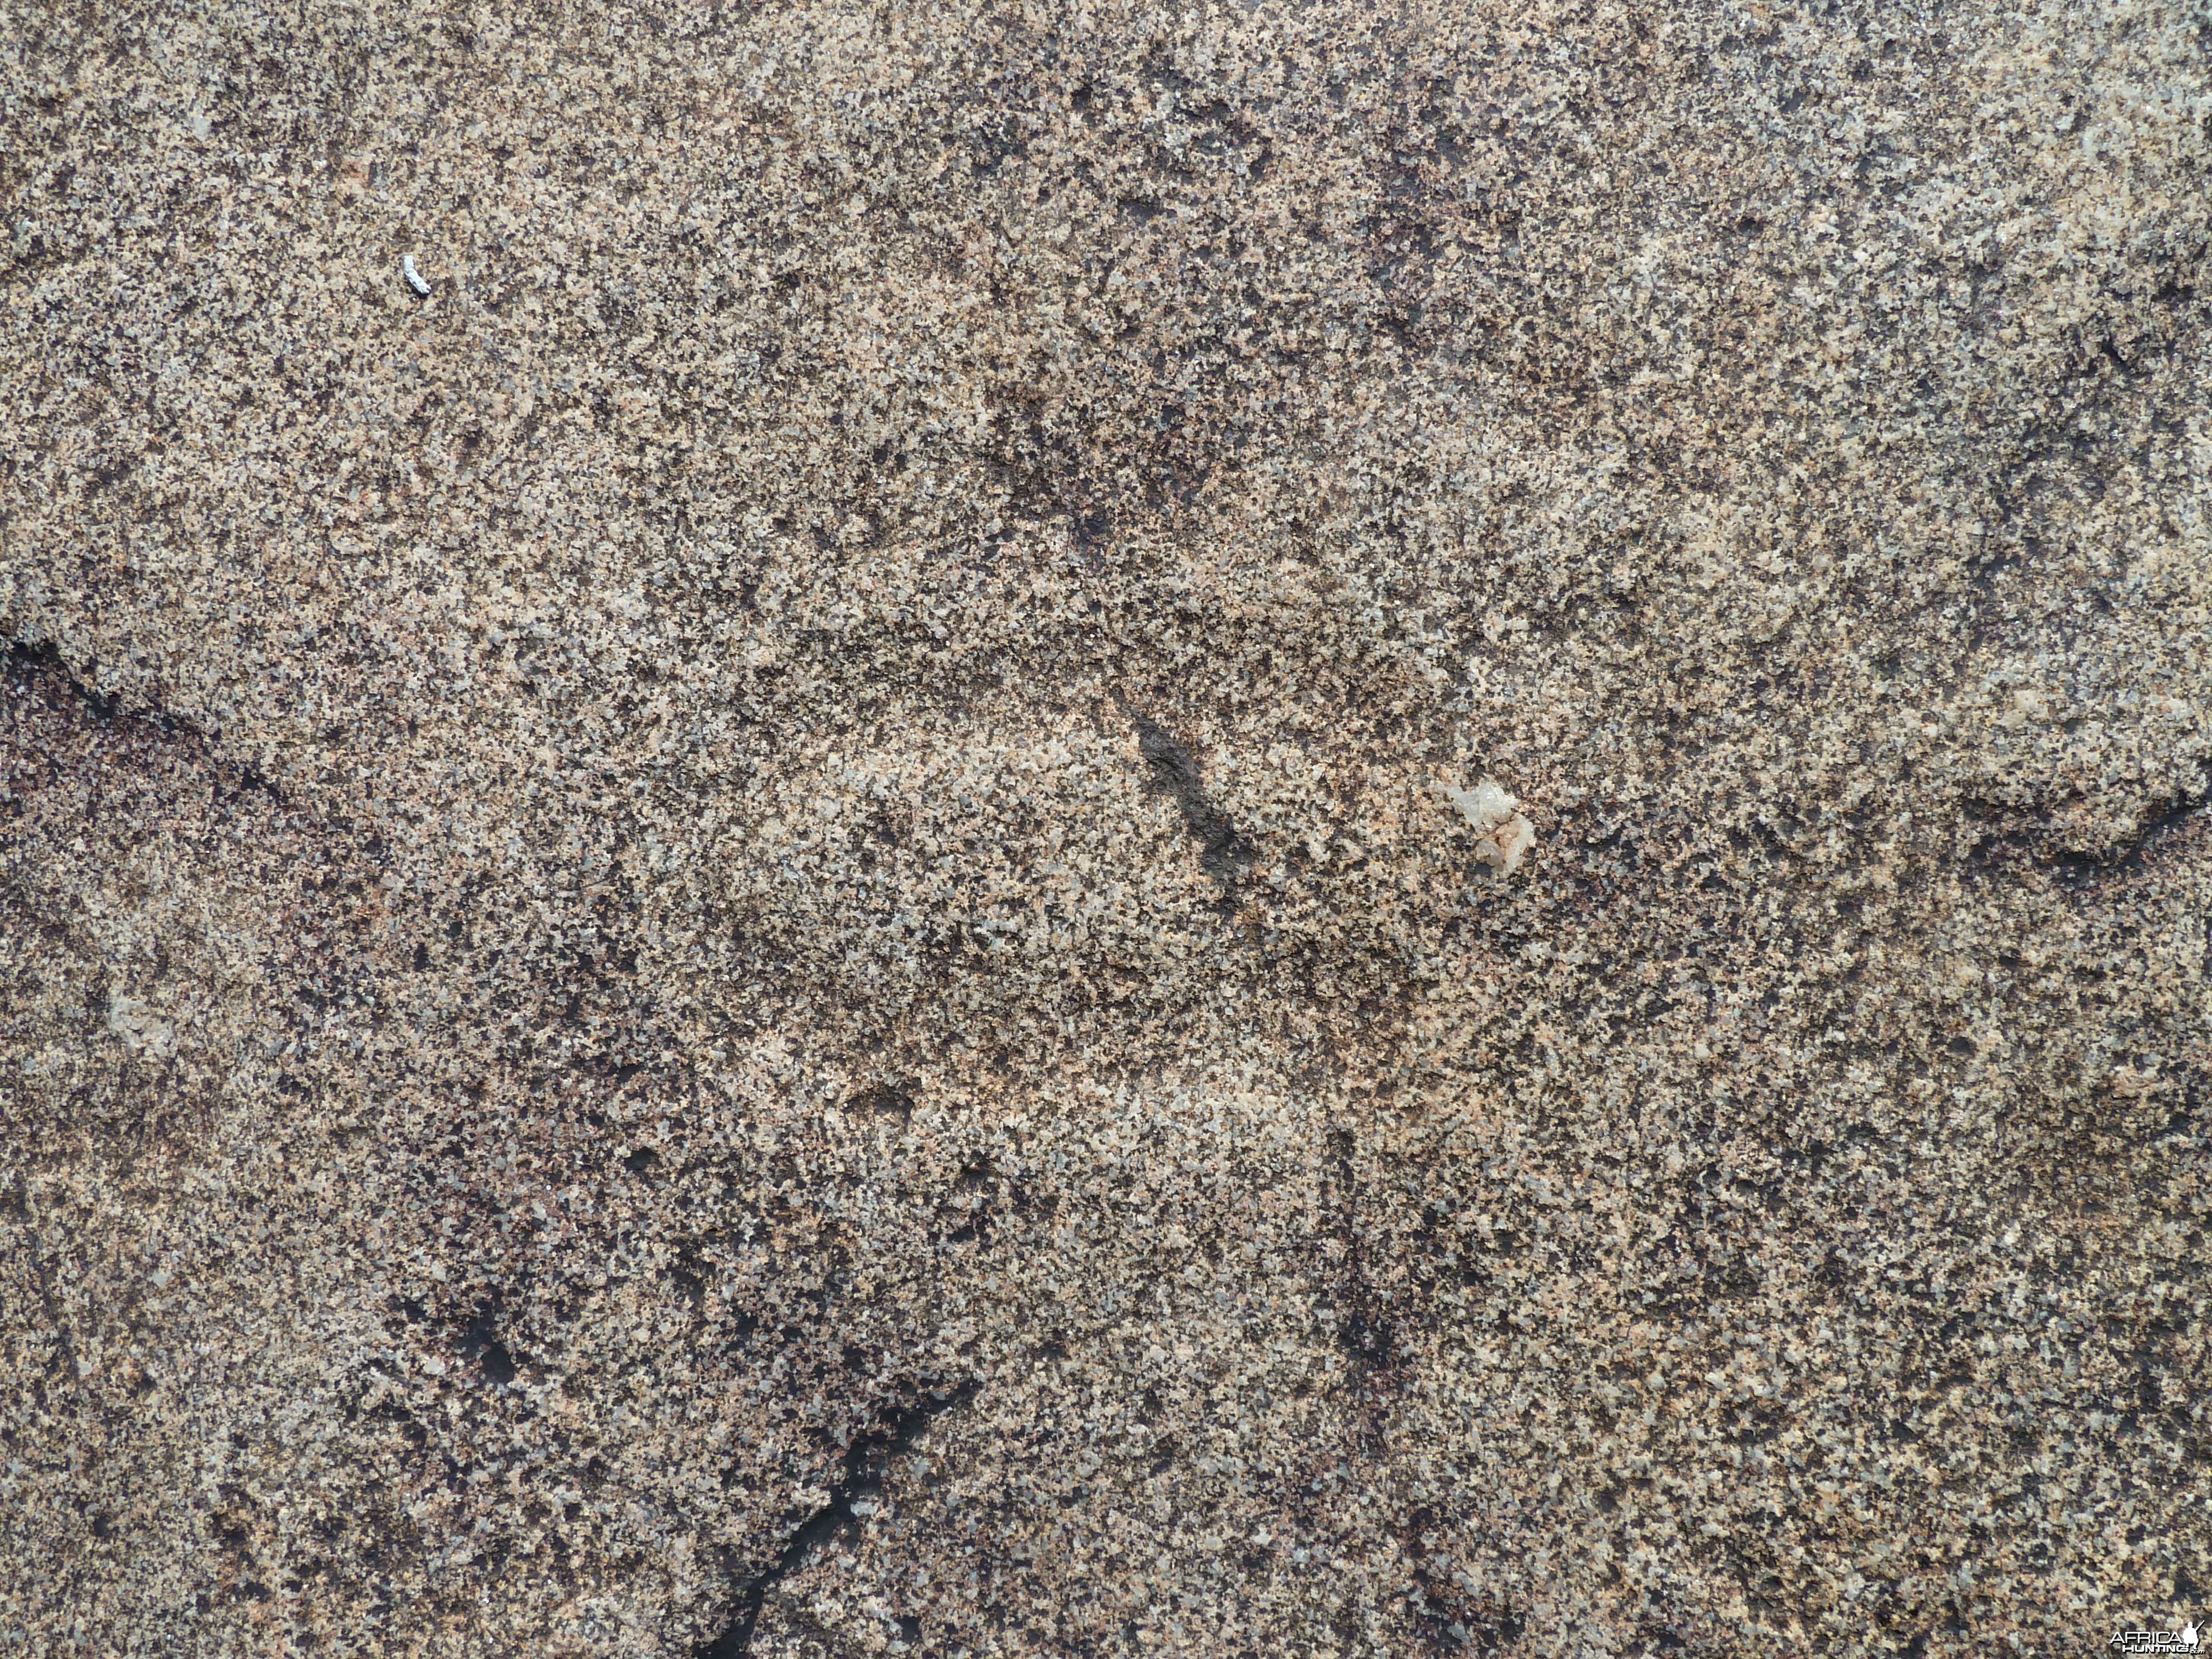 Animal tracks in the rock in Namibia